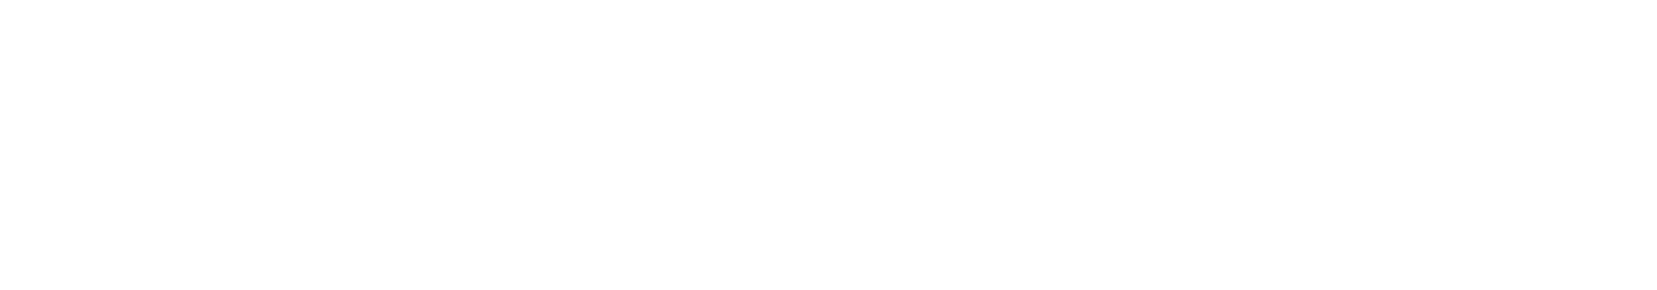 Sartorius Logo groß für dunkle Hintergründe (transparentes PNG)